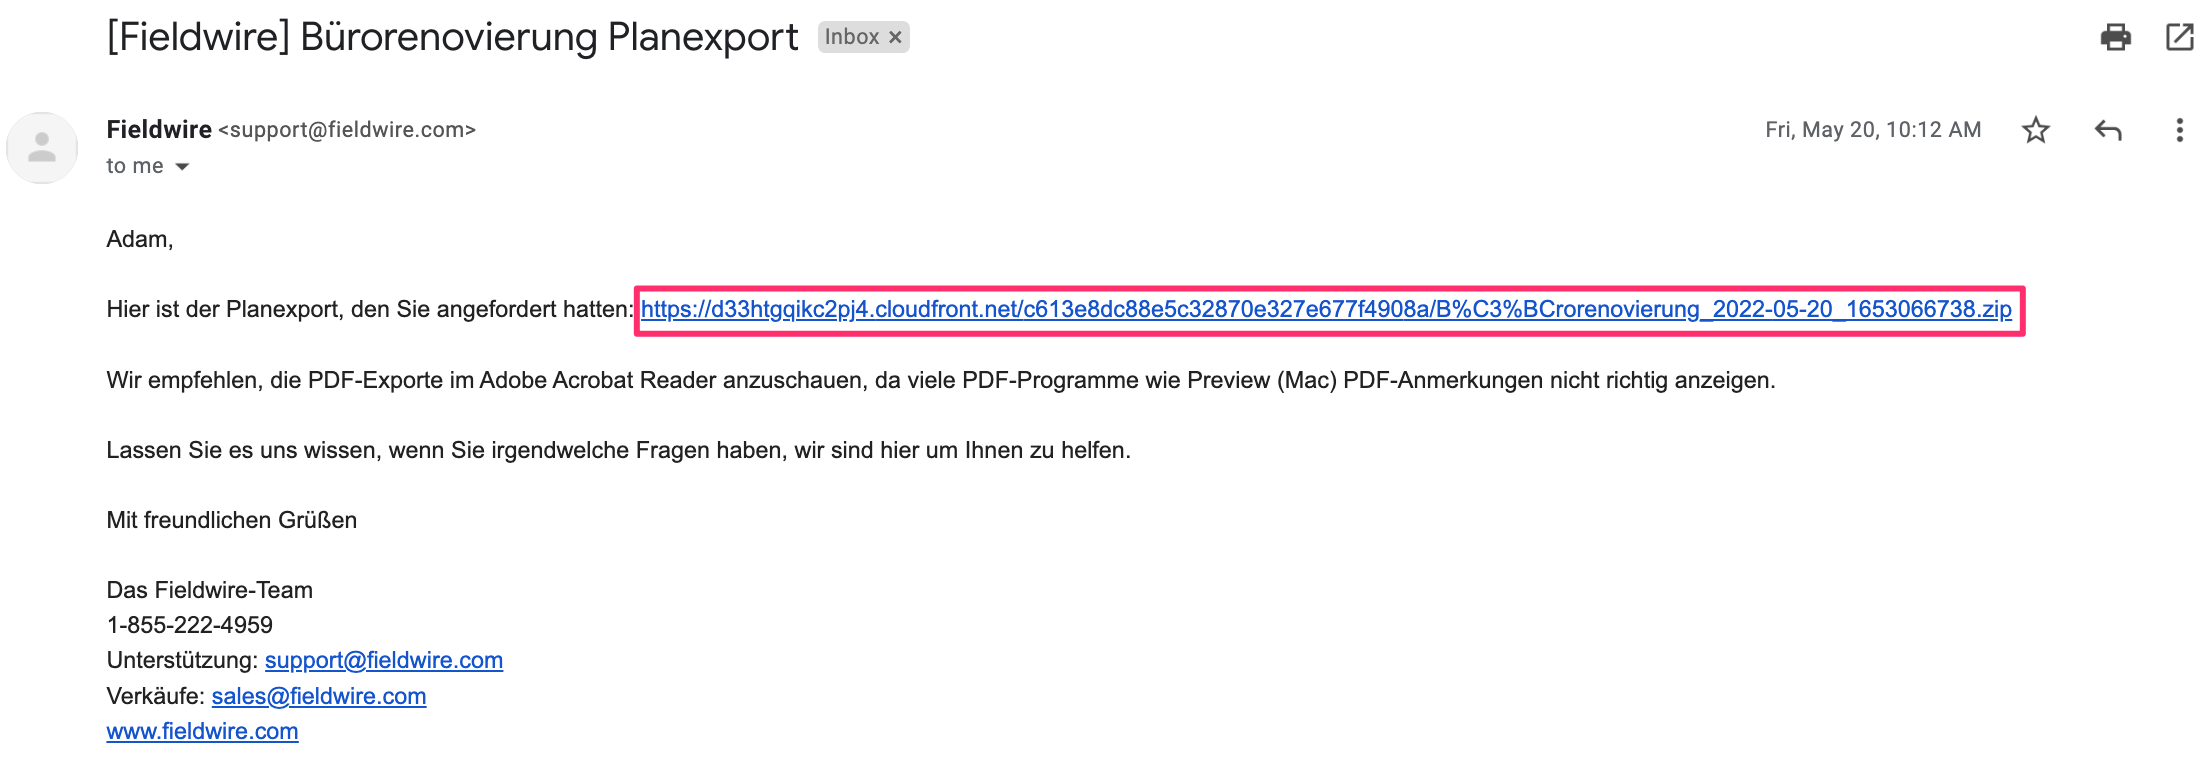 3._Plan_export_Email_de.png